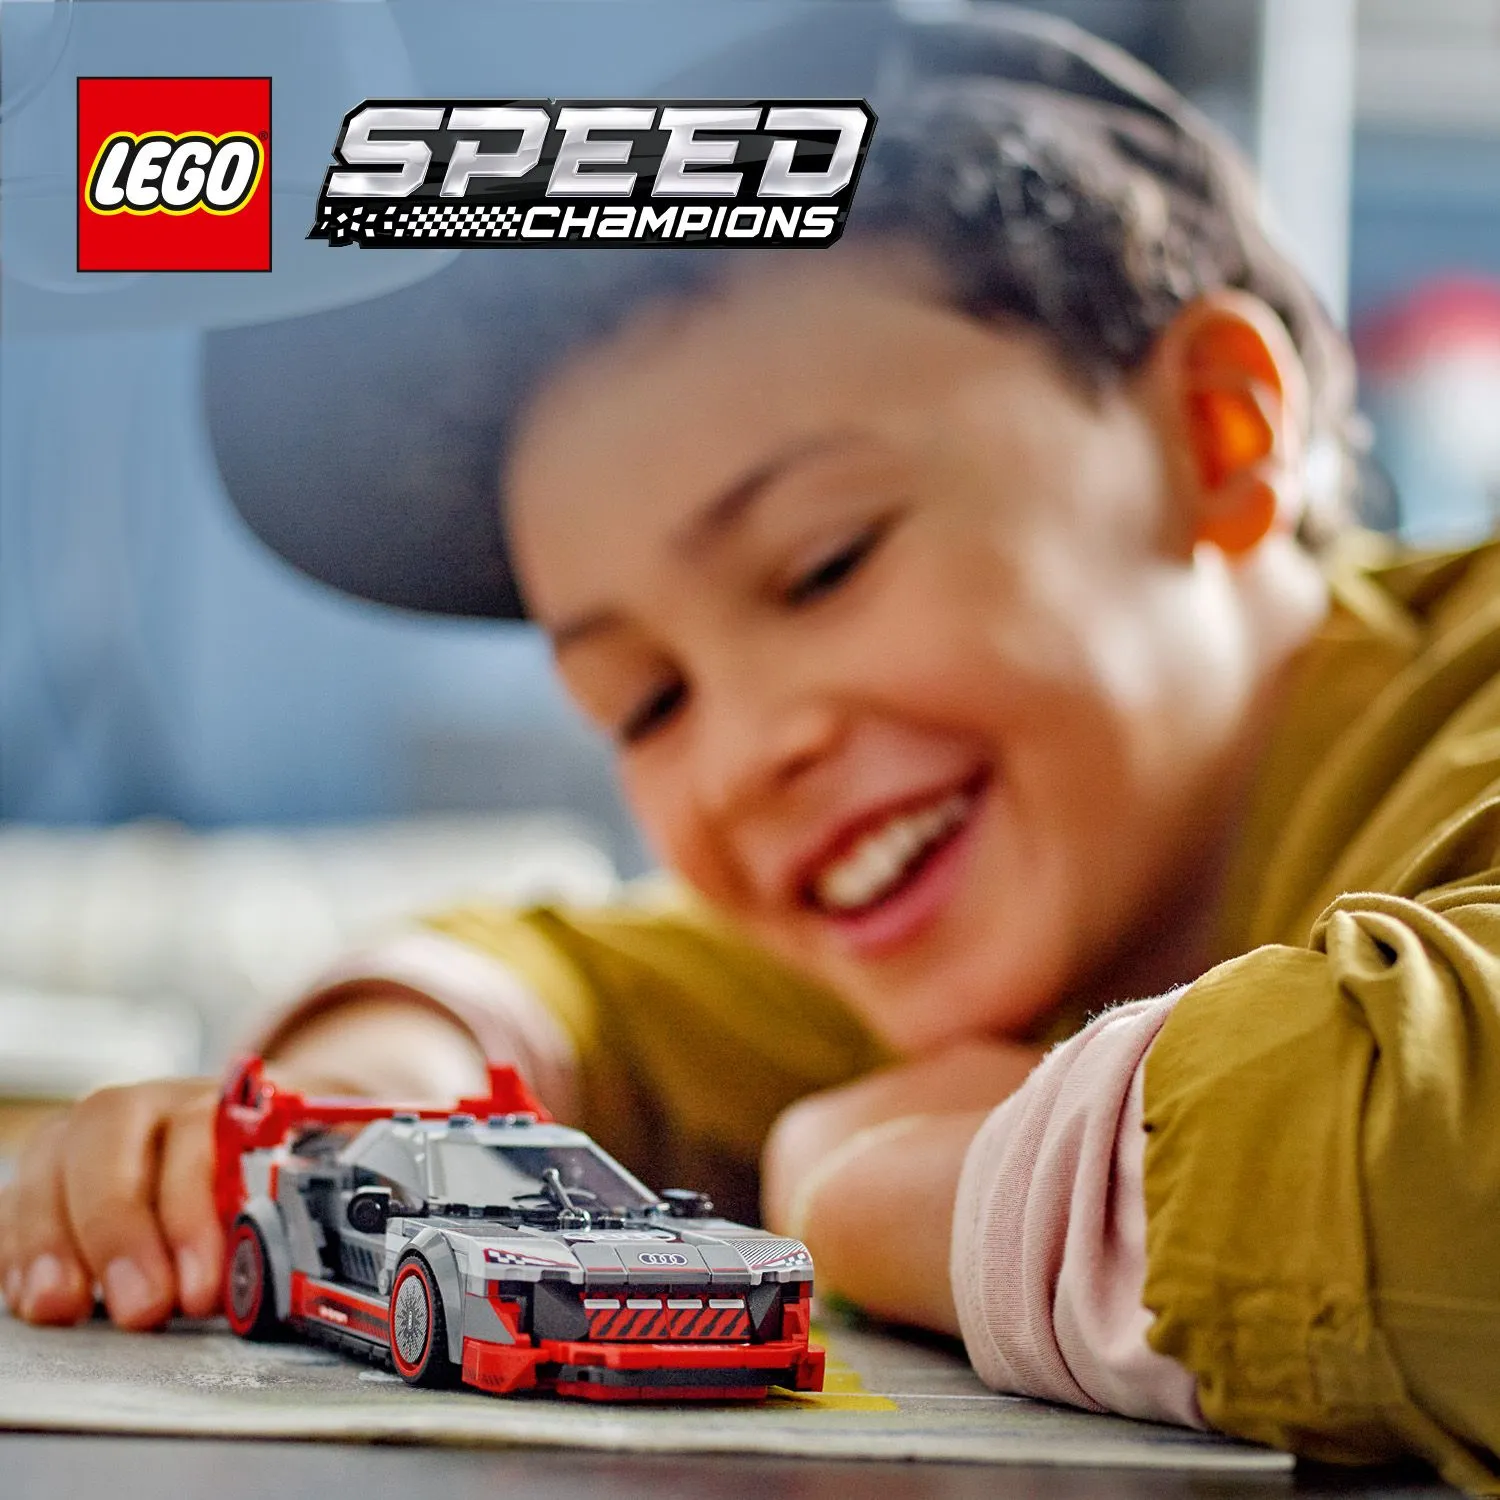 Постройте модель Audi из кубиков LEGO®